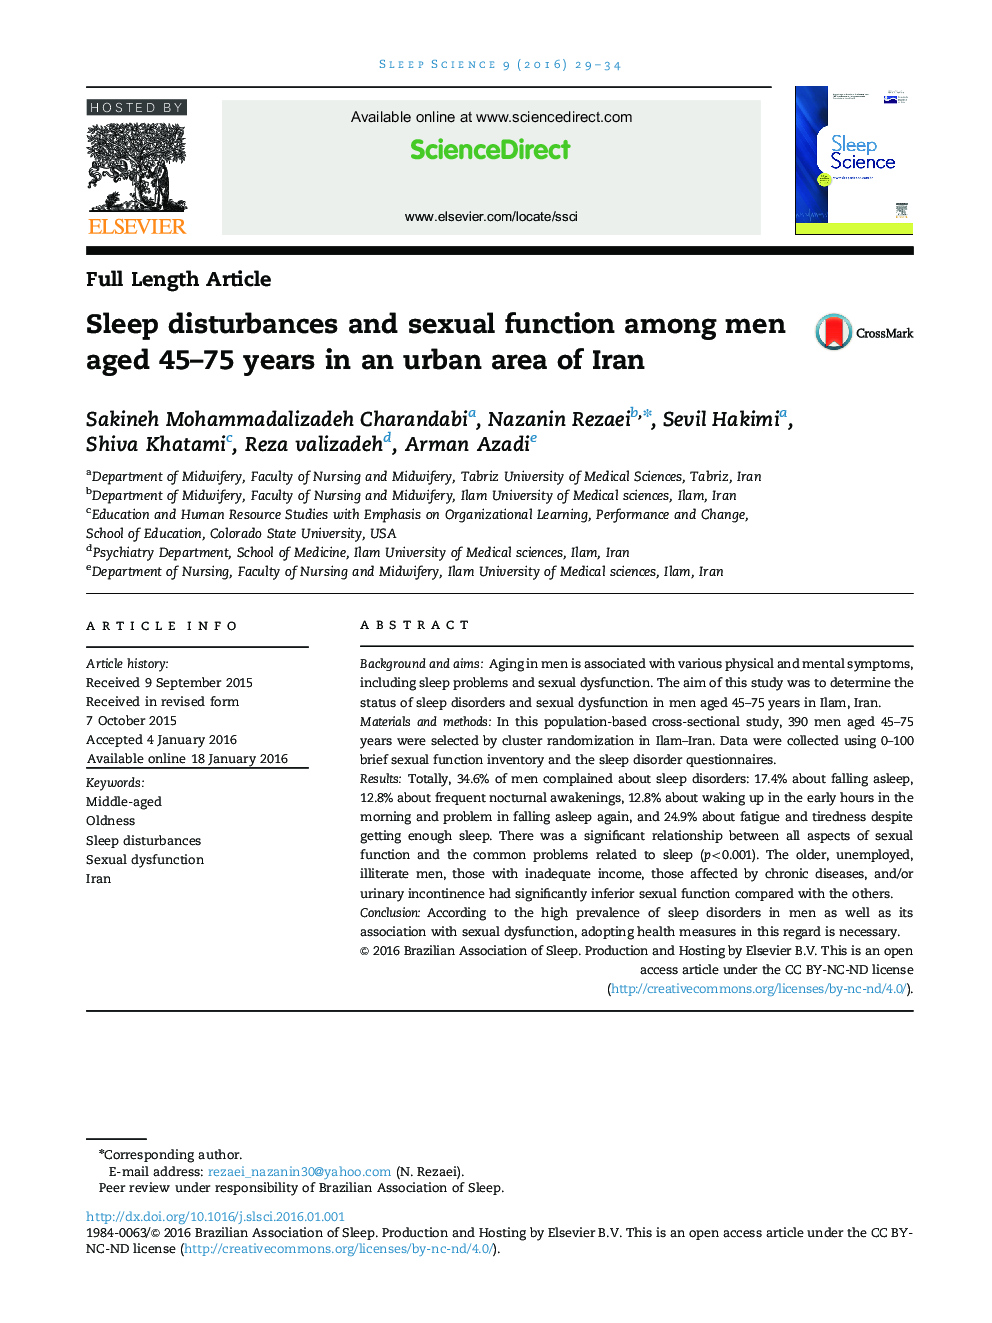 اختلالات خواب و عملکرد جنسی در میان مردان 45 ساله و 75 ساله در یک منطقه شهری ایران 